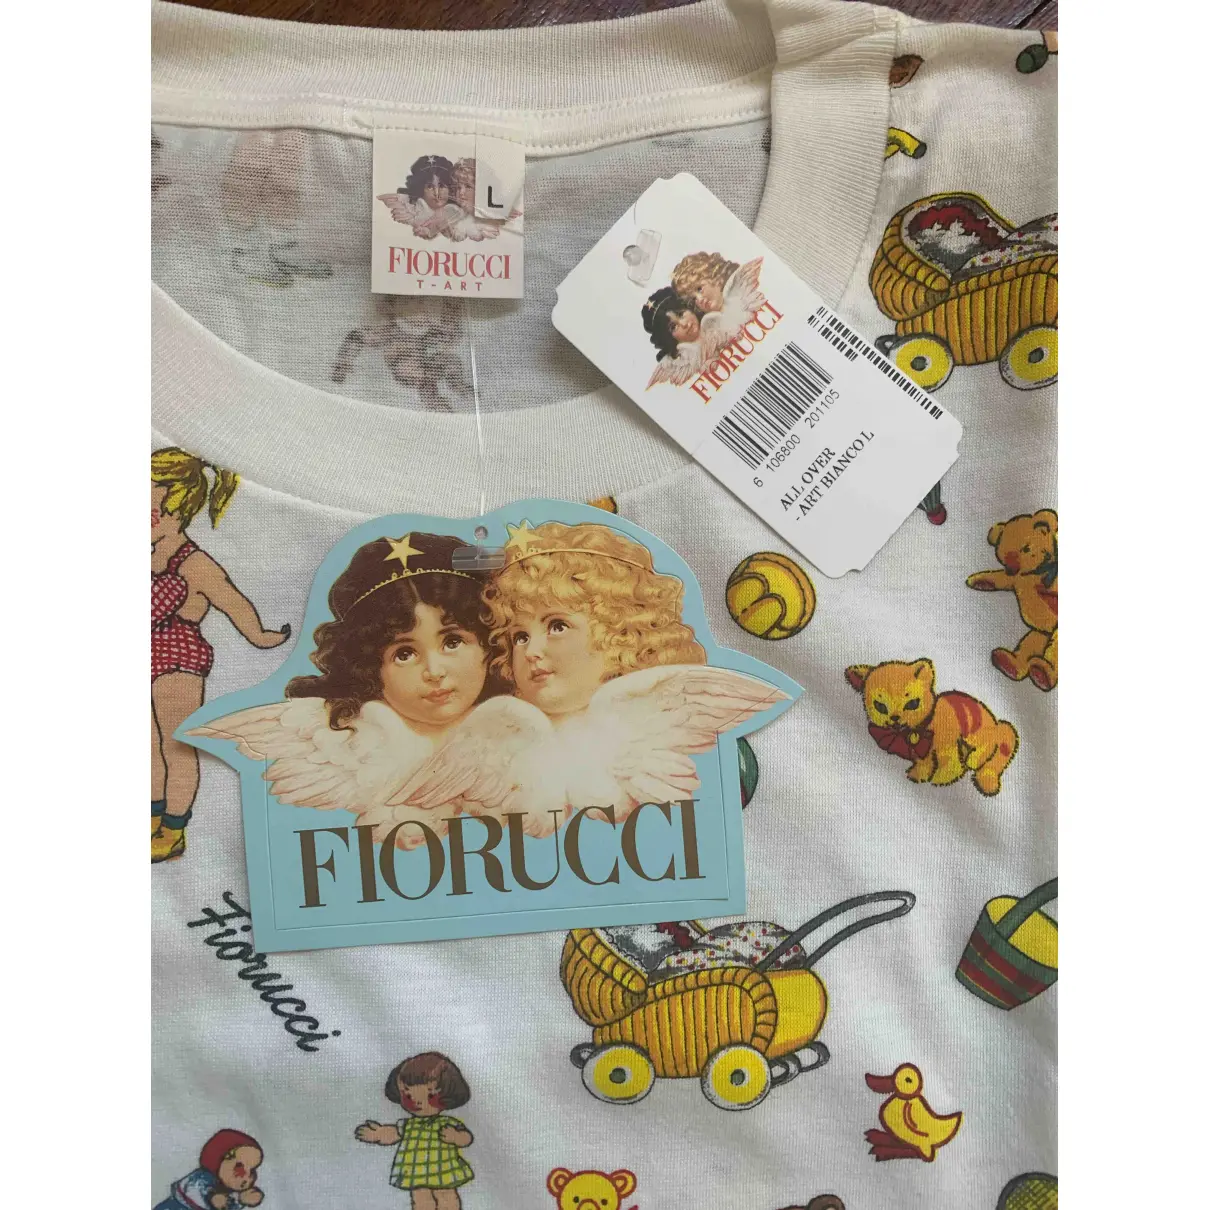 Buy Fiorucci White Cotton Top online - Vintage